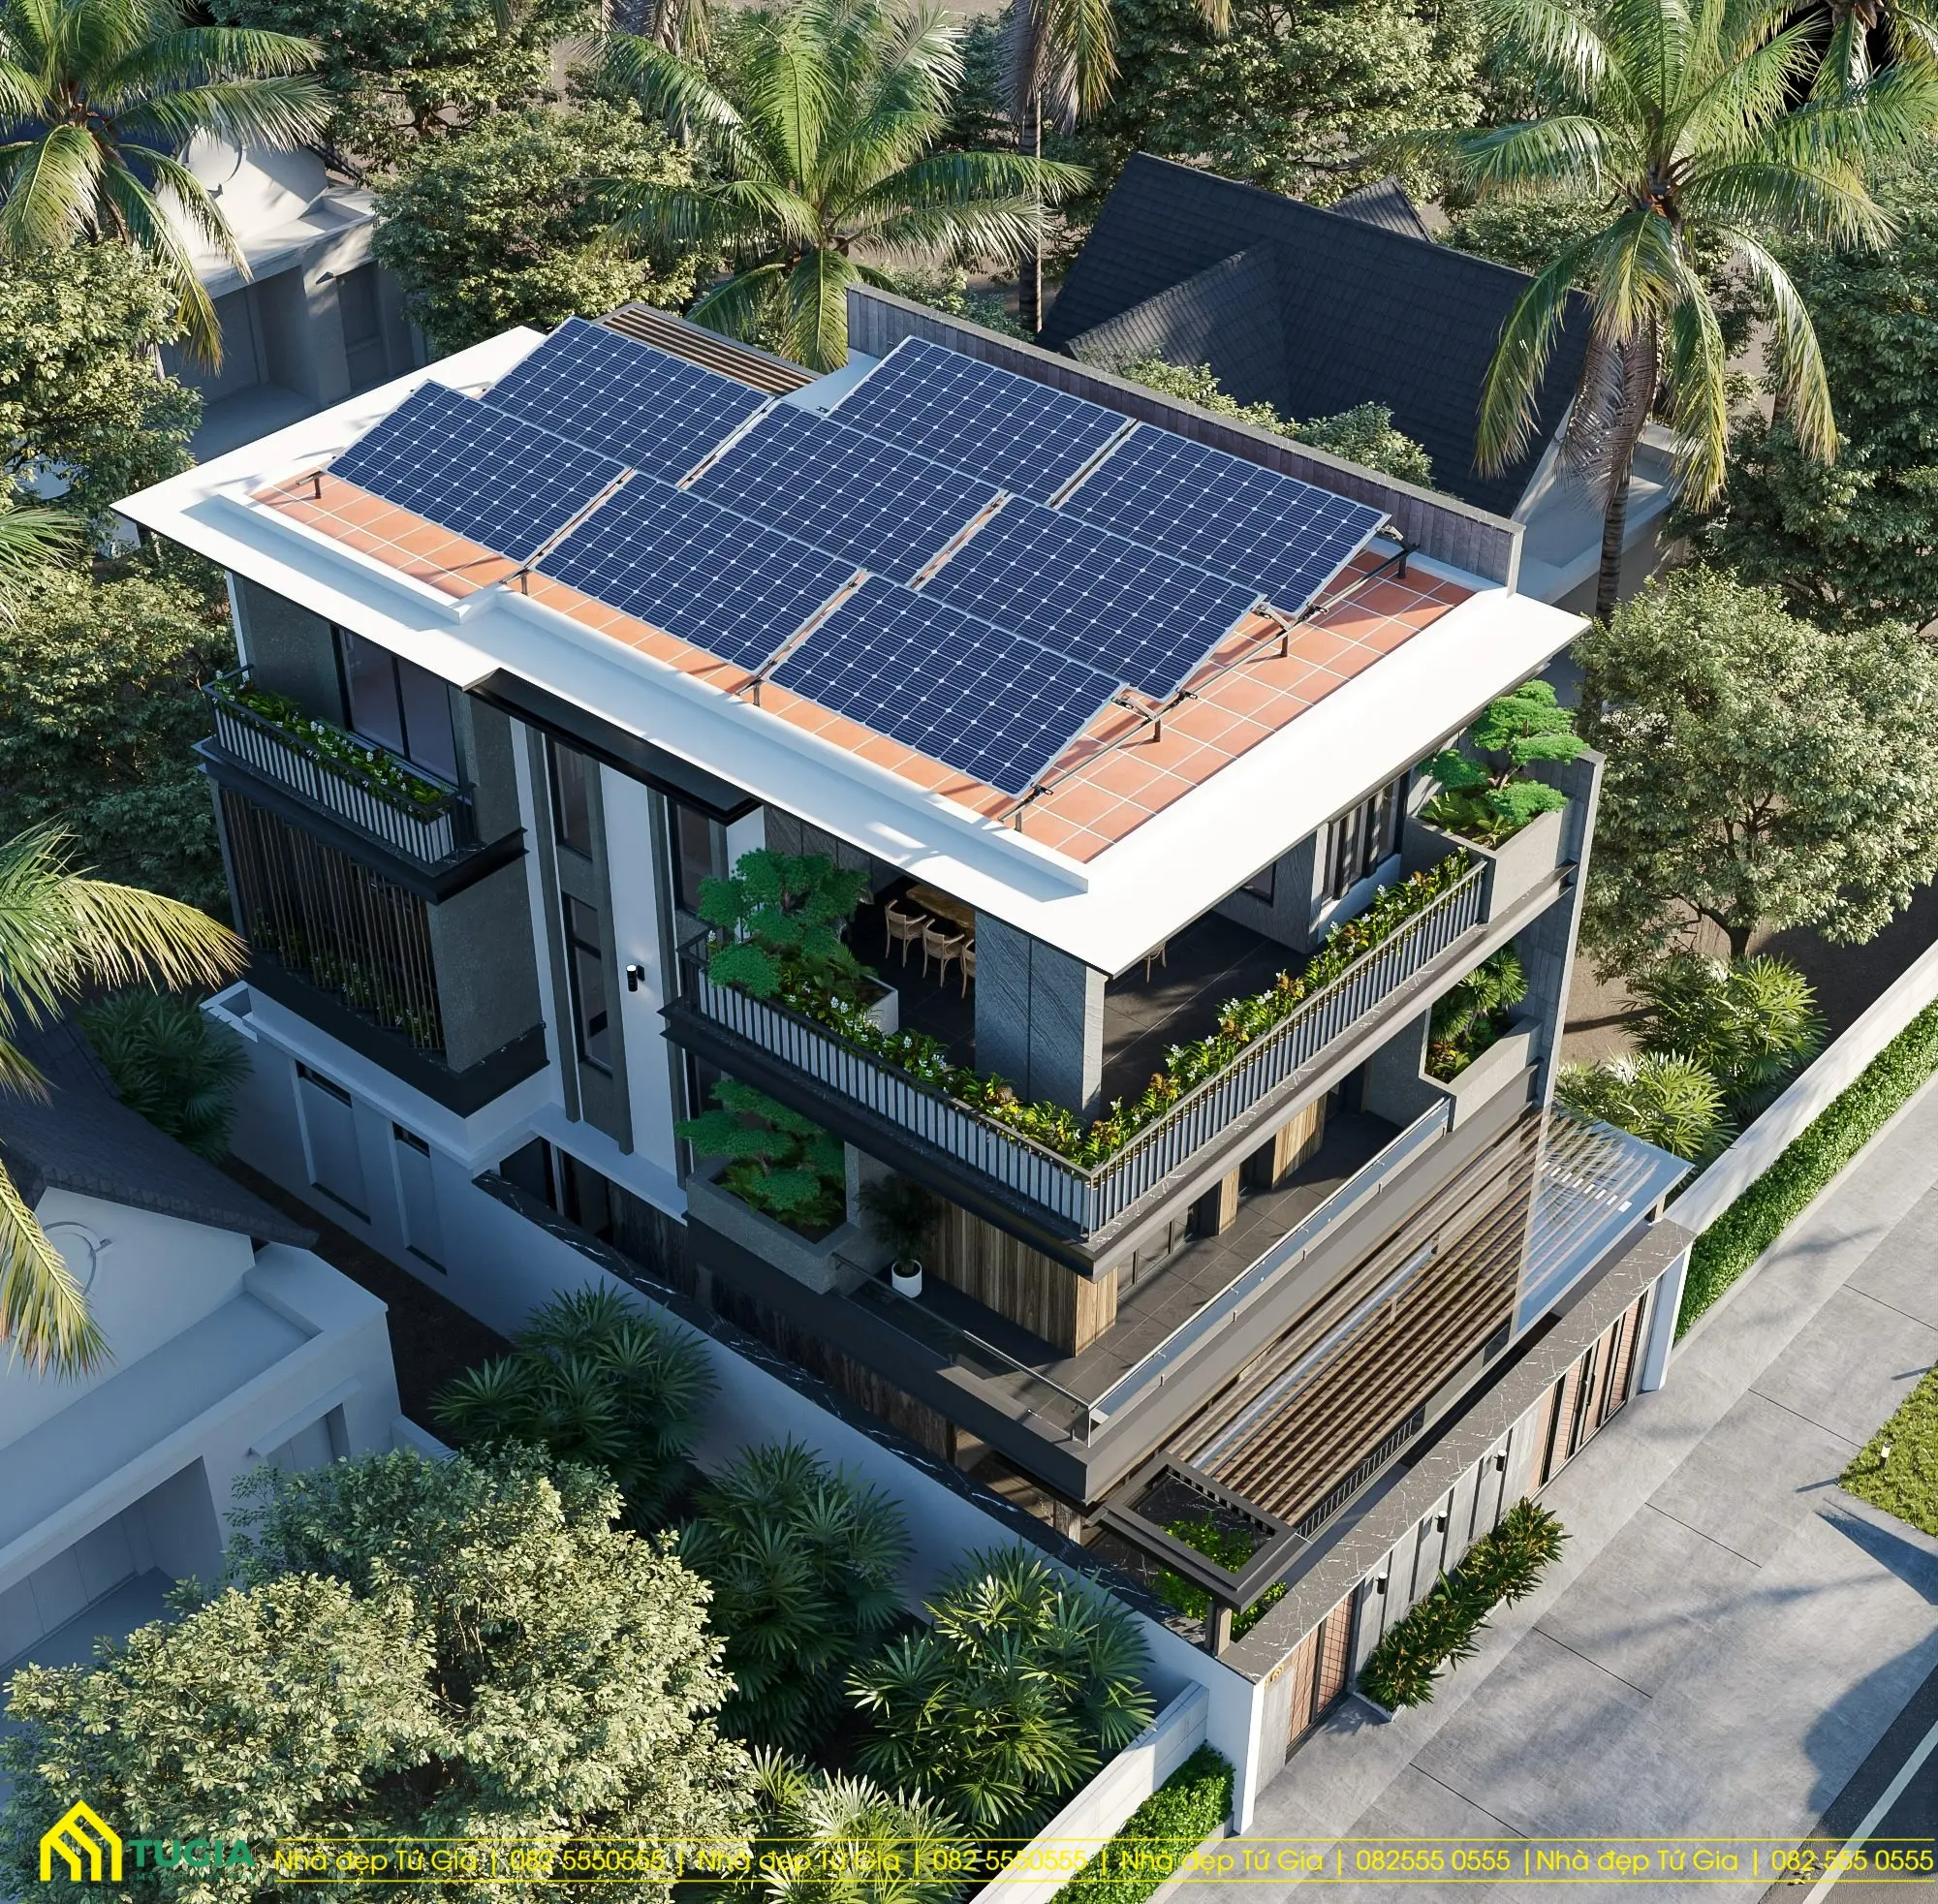 Lắp đặt hệ thống pin năng lượng mặt trời trên sân thượng giúp tiết kiệm được điện năng tiêu thụ hàng ngày